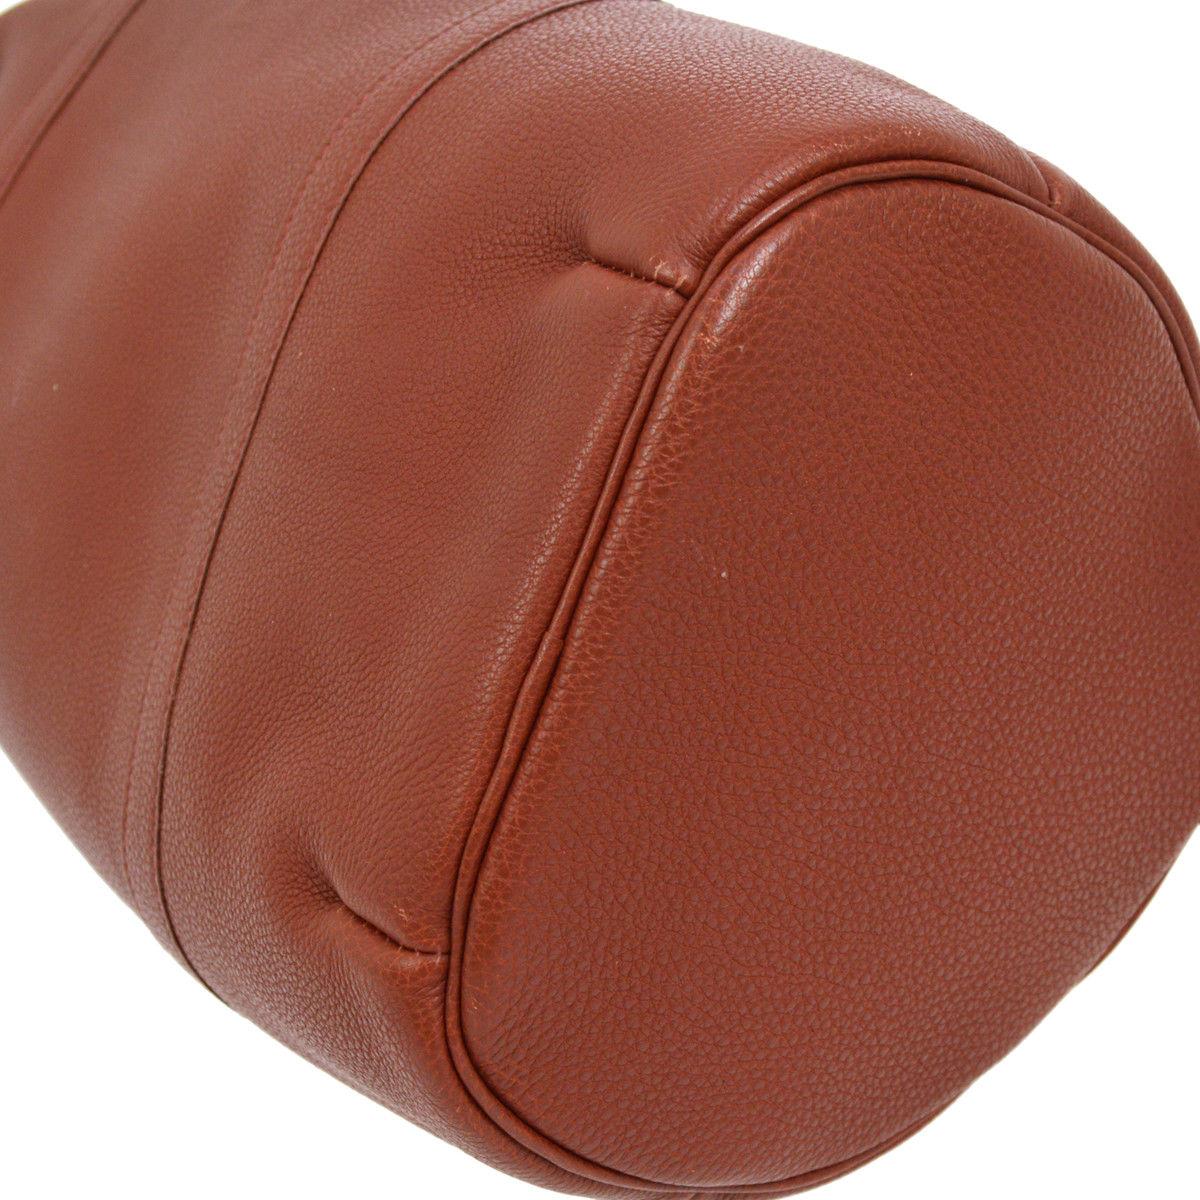 Brown Hermes Leather Top Handle Large Men's Women's Weekender Carryall Travel Bag